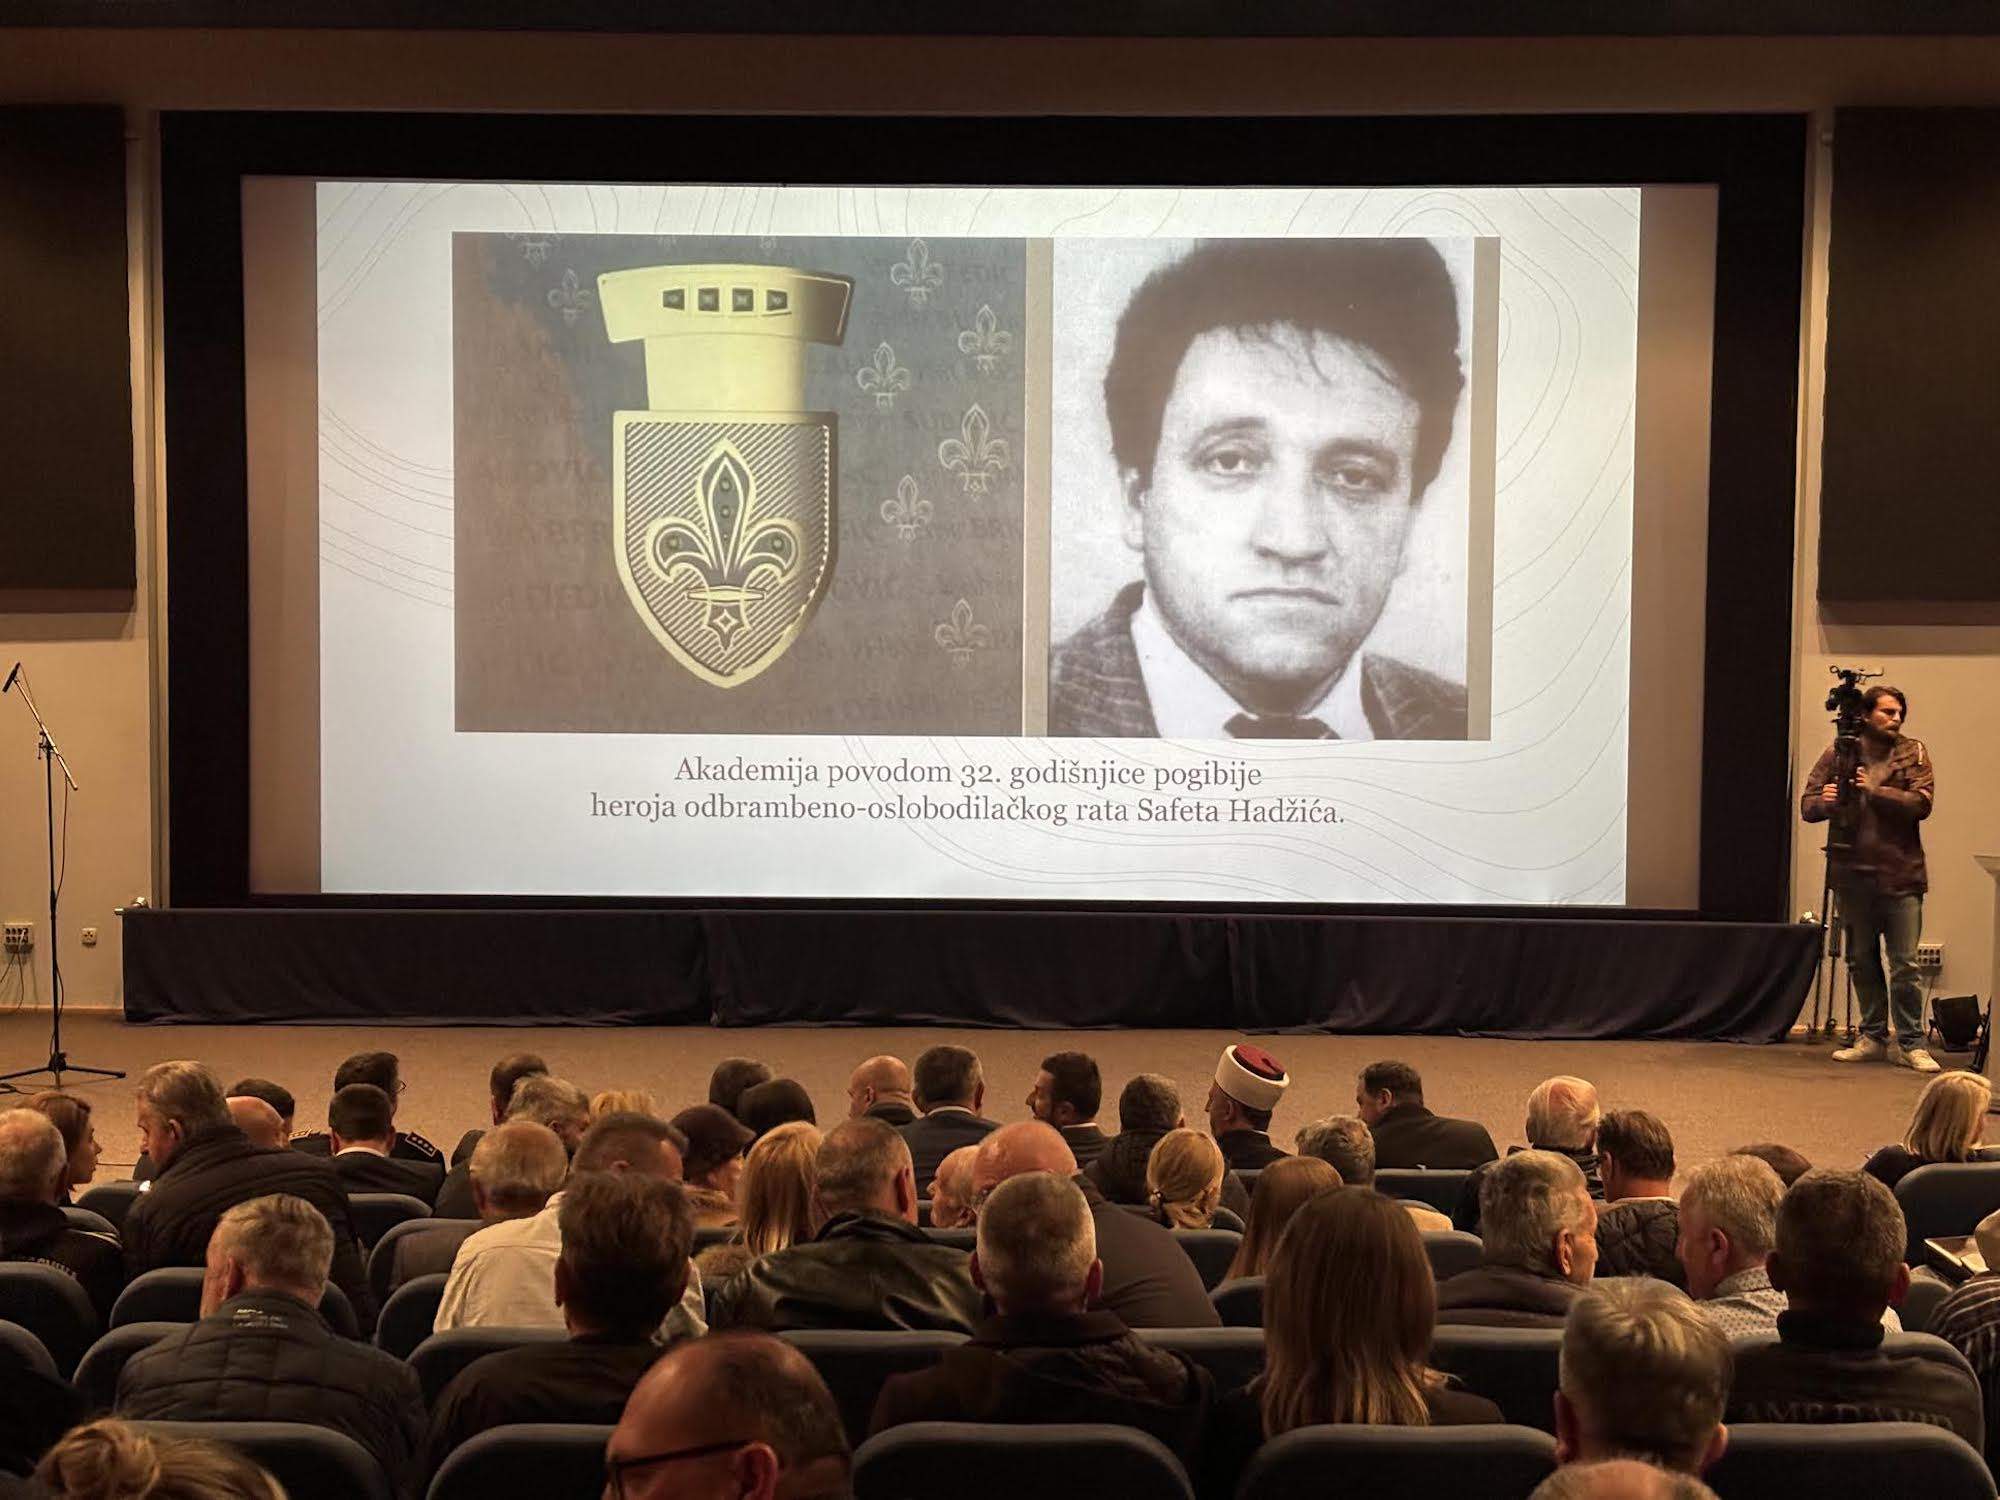 Akademija povodom 32. godišnjice pogibije heroja Safeta Hadžića: On je vrijednost koja nas okuplja